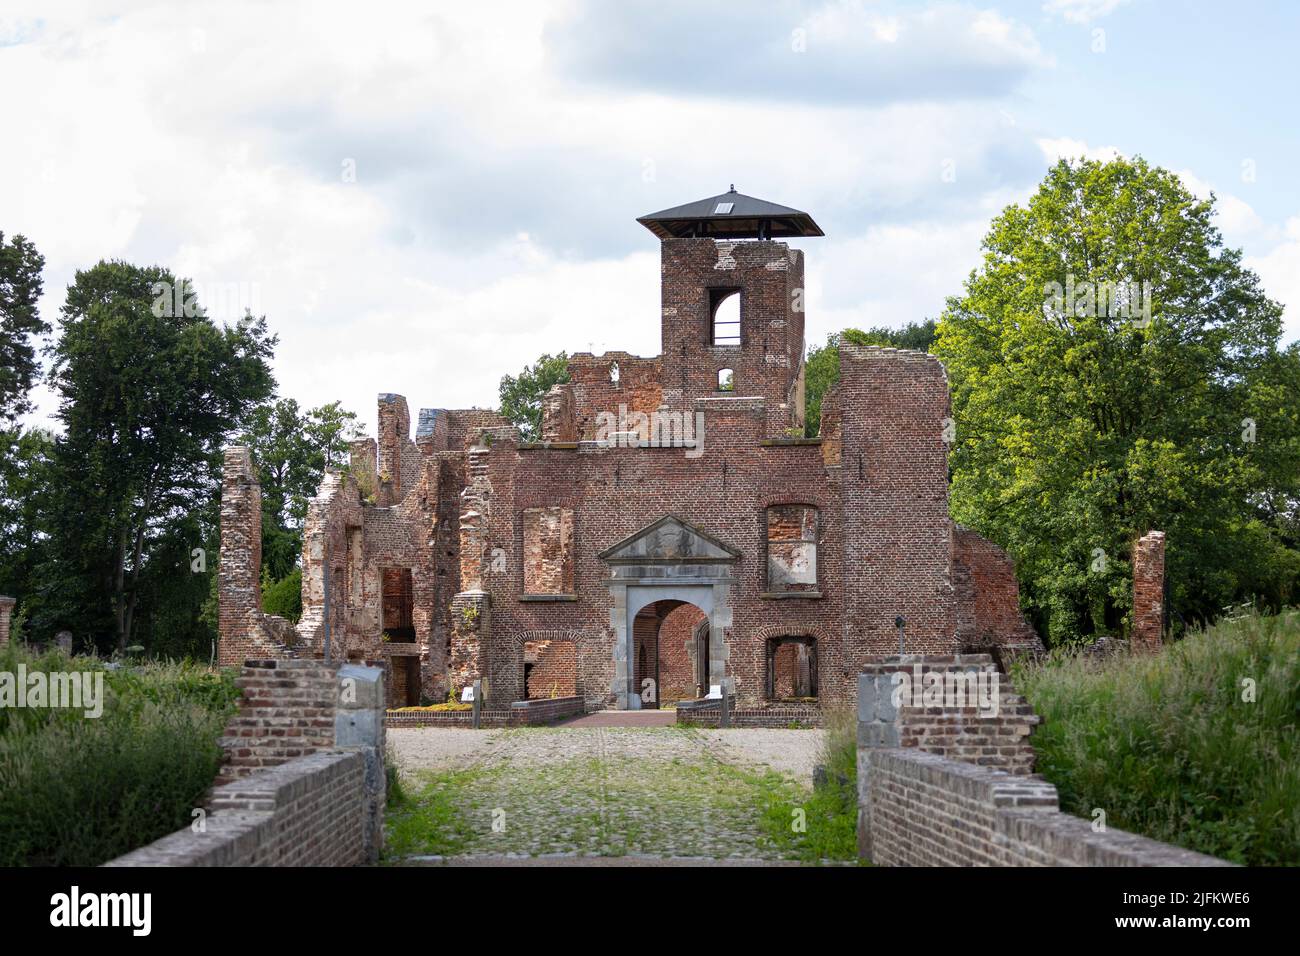 Castillo medieval en ruinas 'Bleijenbeek' en los Países Bajos, bombardeado por la RAF durante WW2 Foto de stock